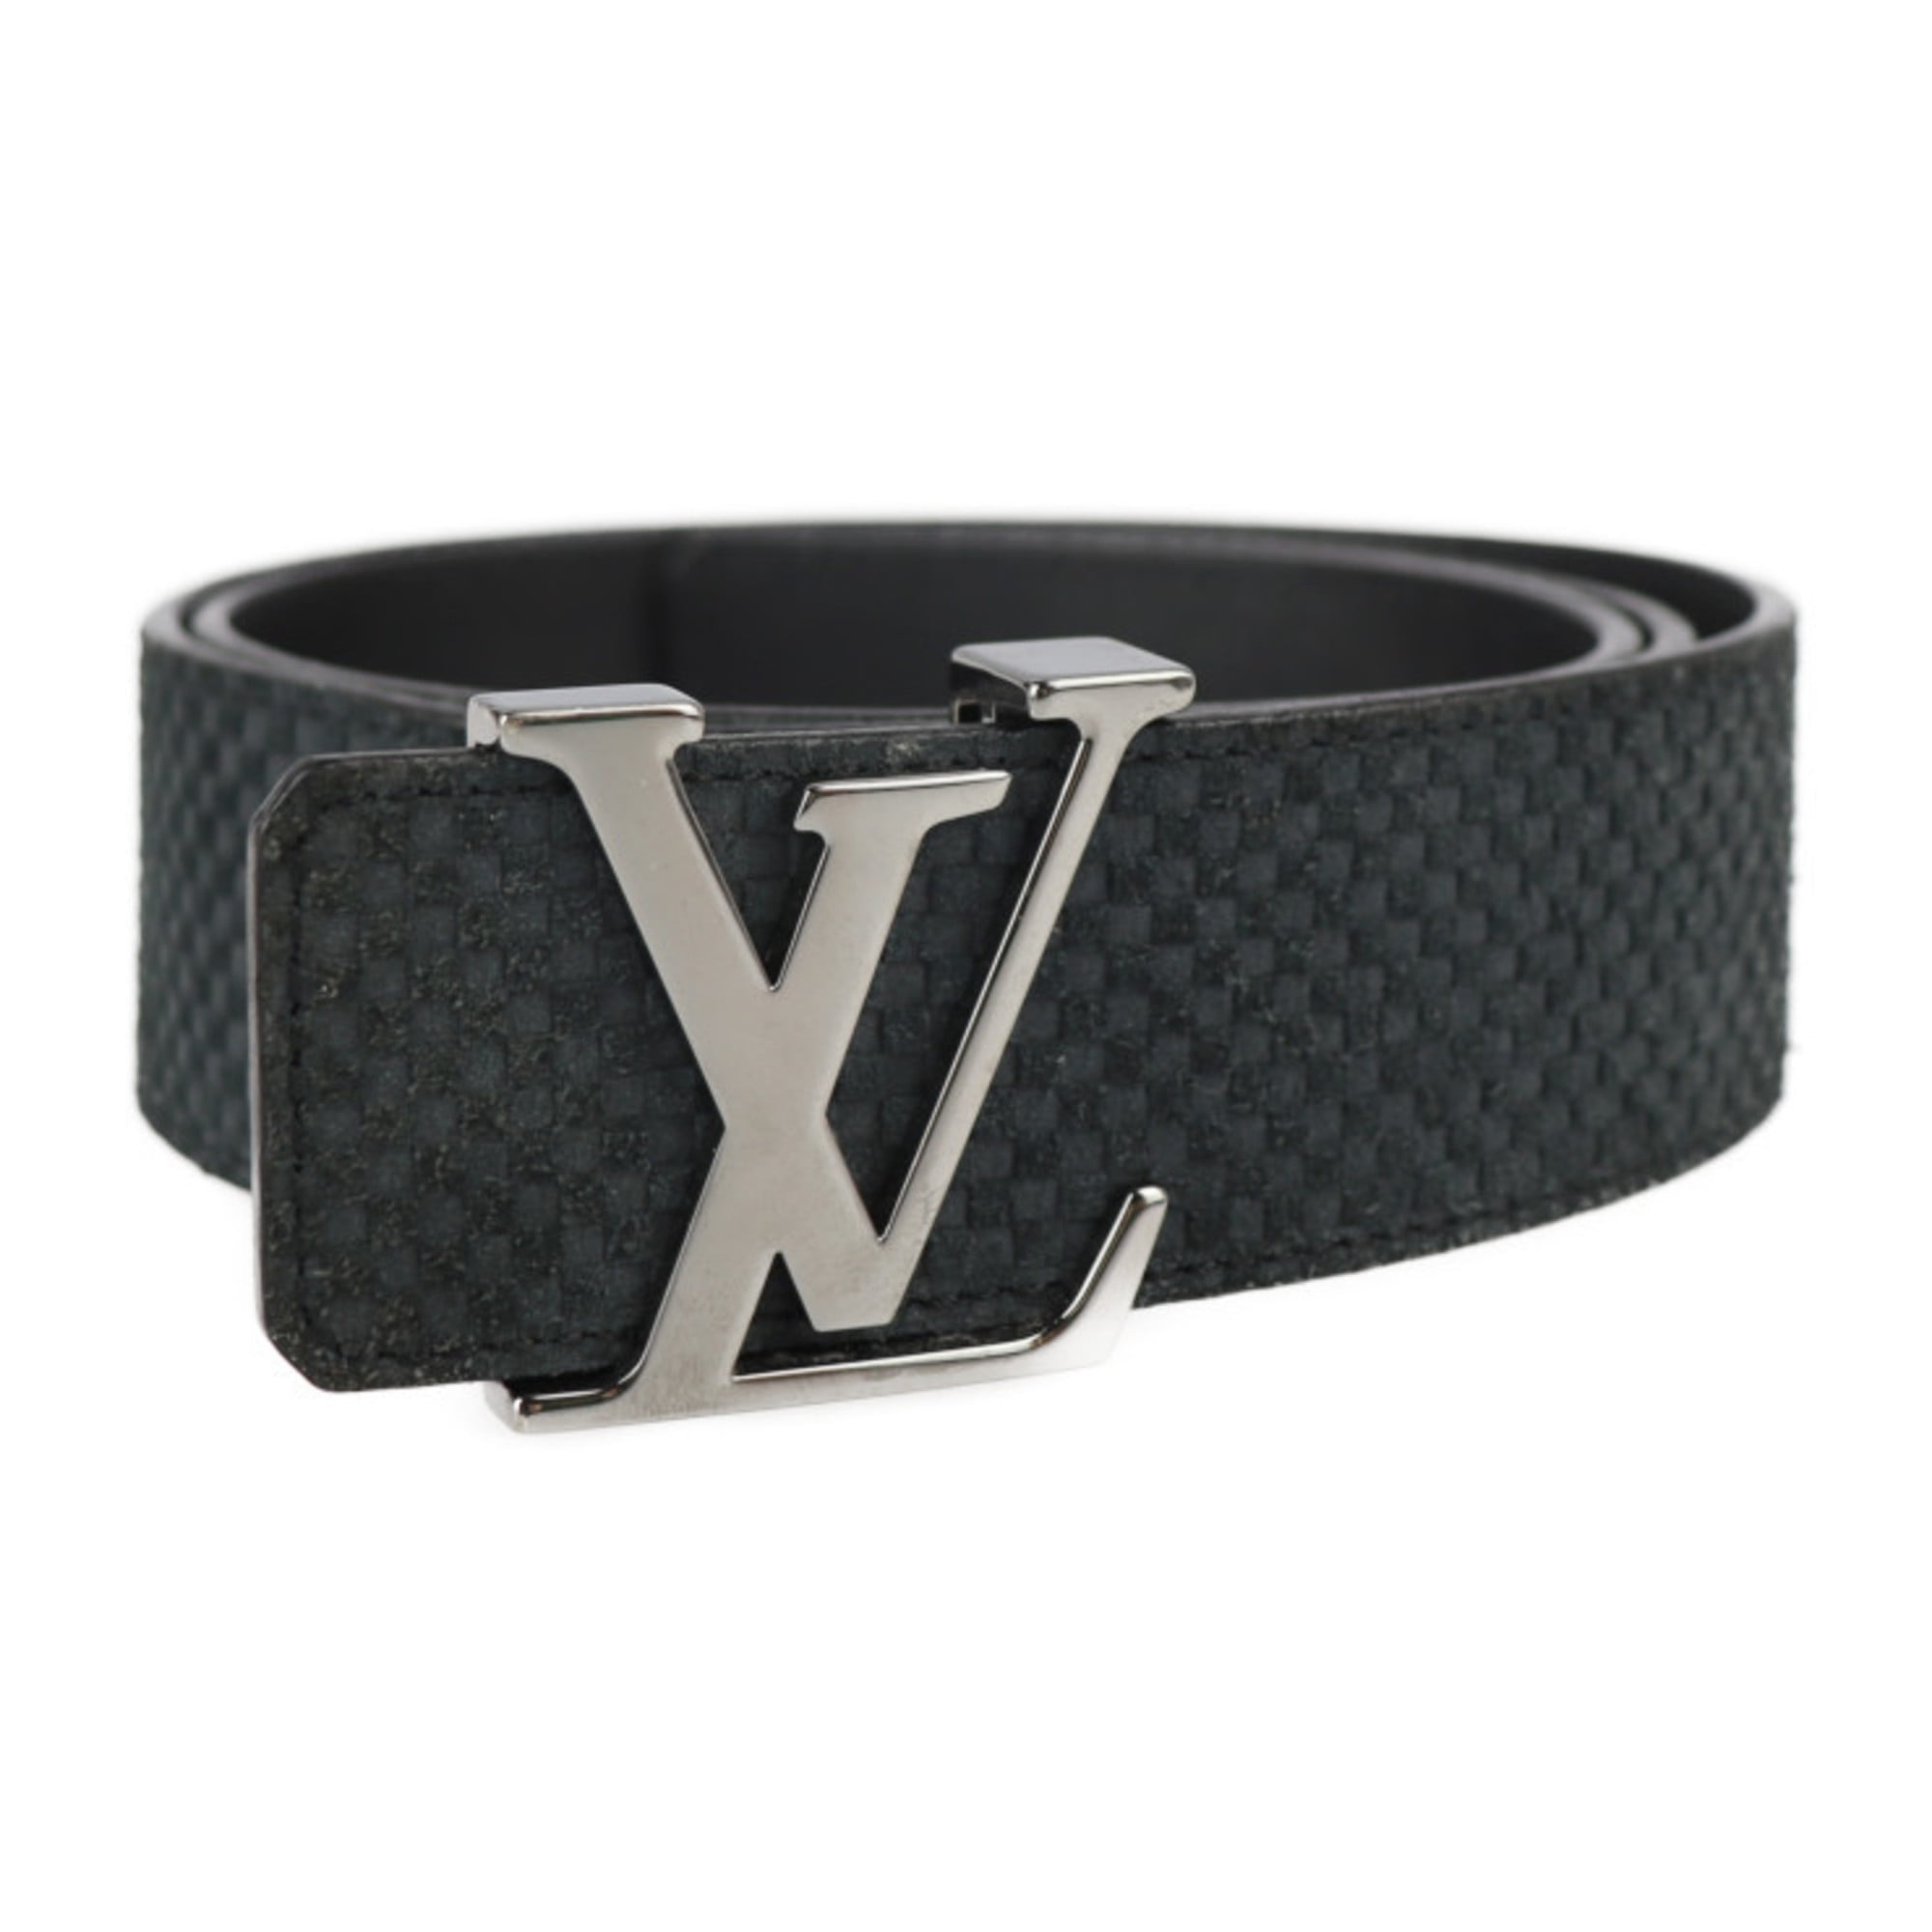 LOUIS VUITTON Louis Vuitton Sun Tulle LV Autograph Belt M0187 Notation Size  100/40 Leather Black Silver Hardware Logo Buckle